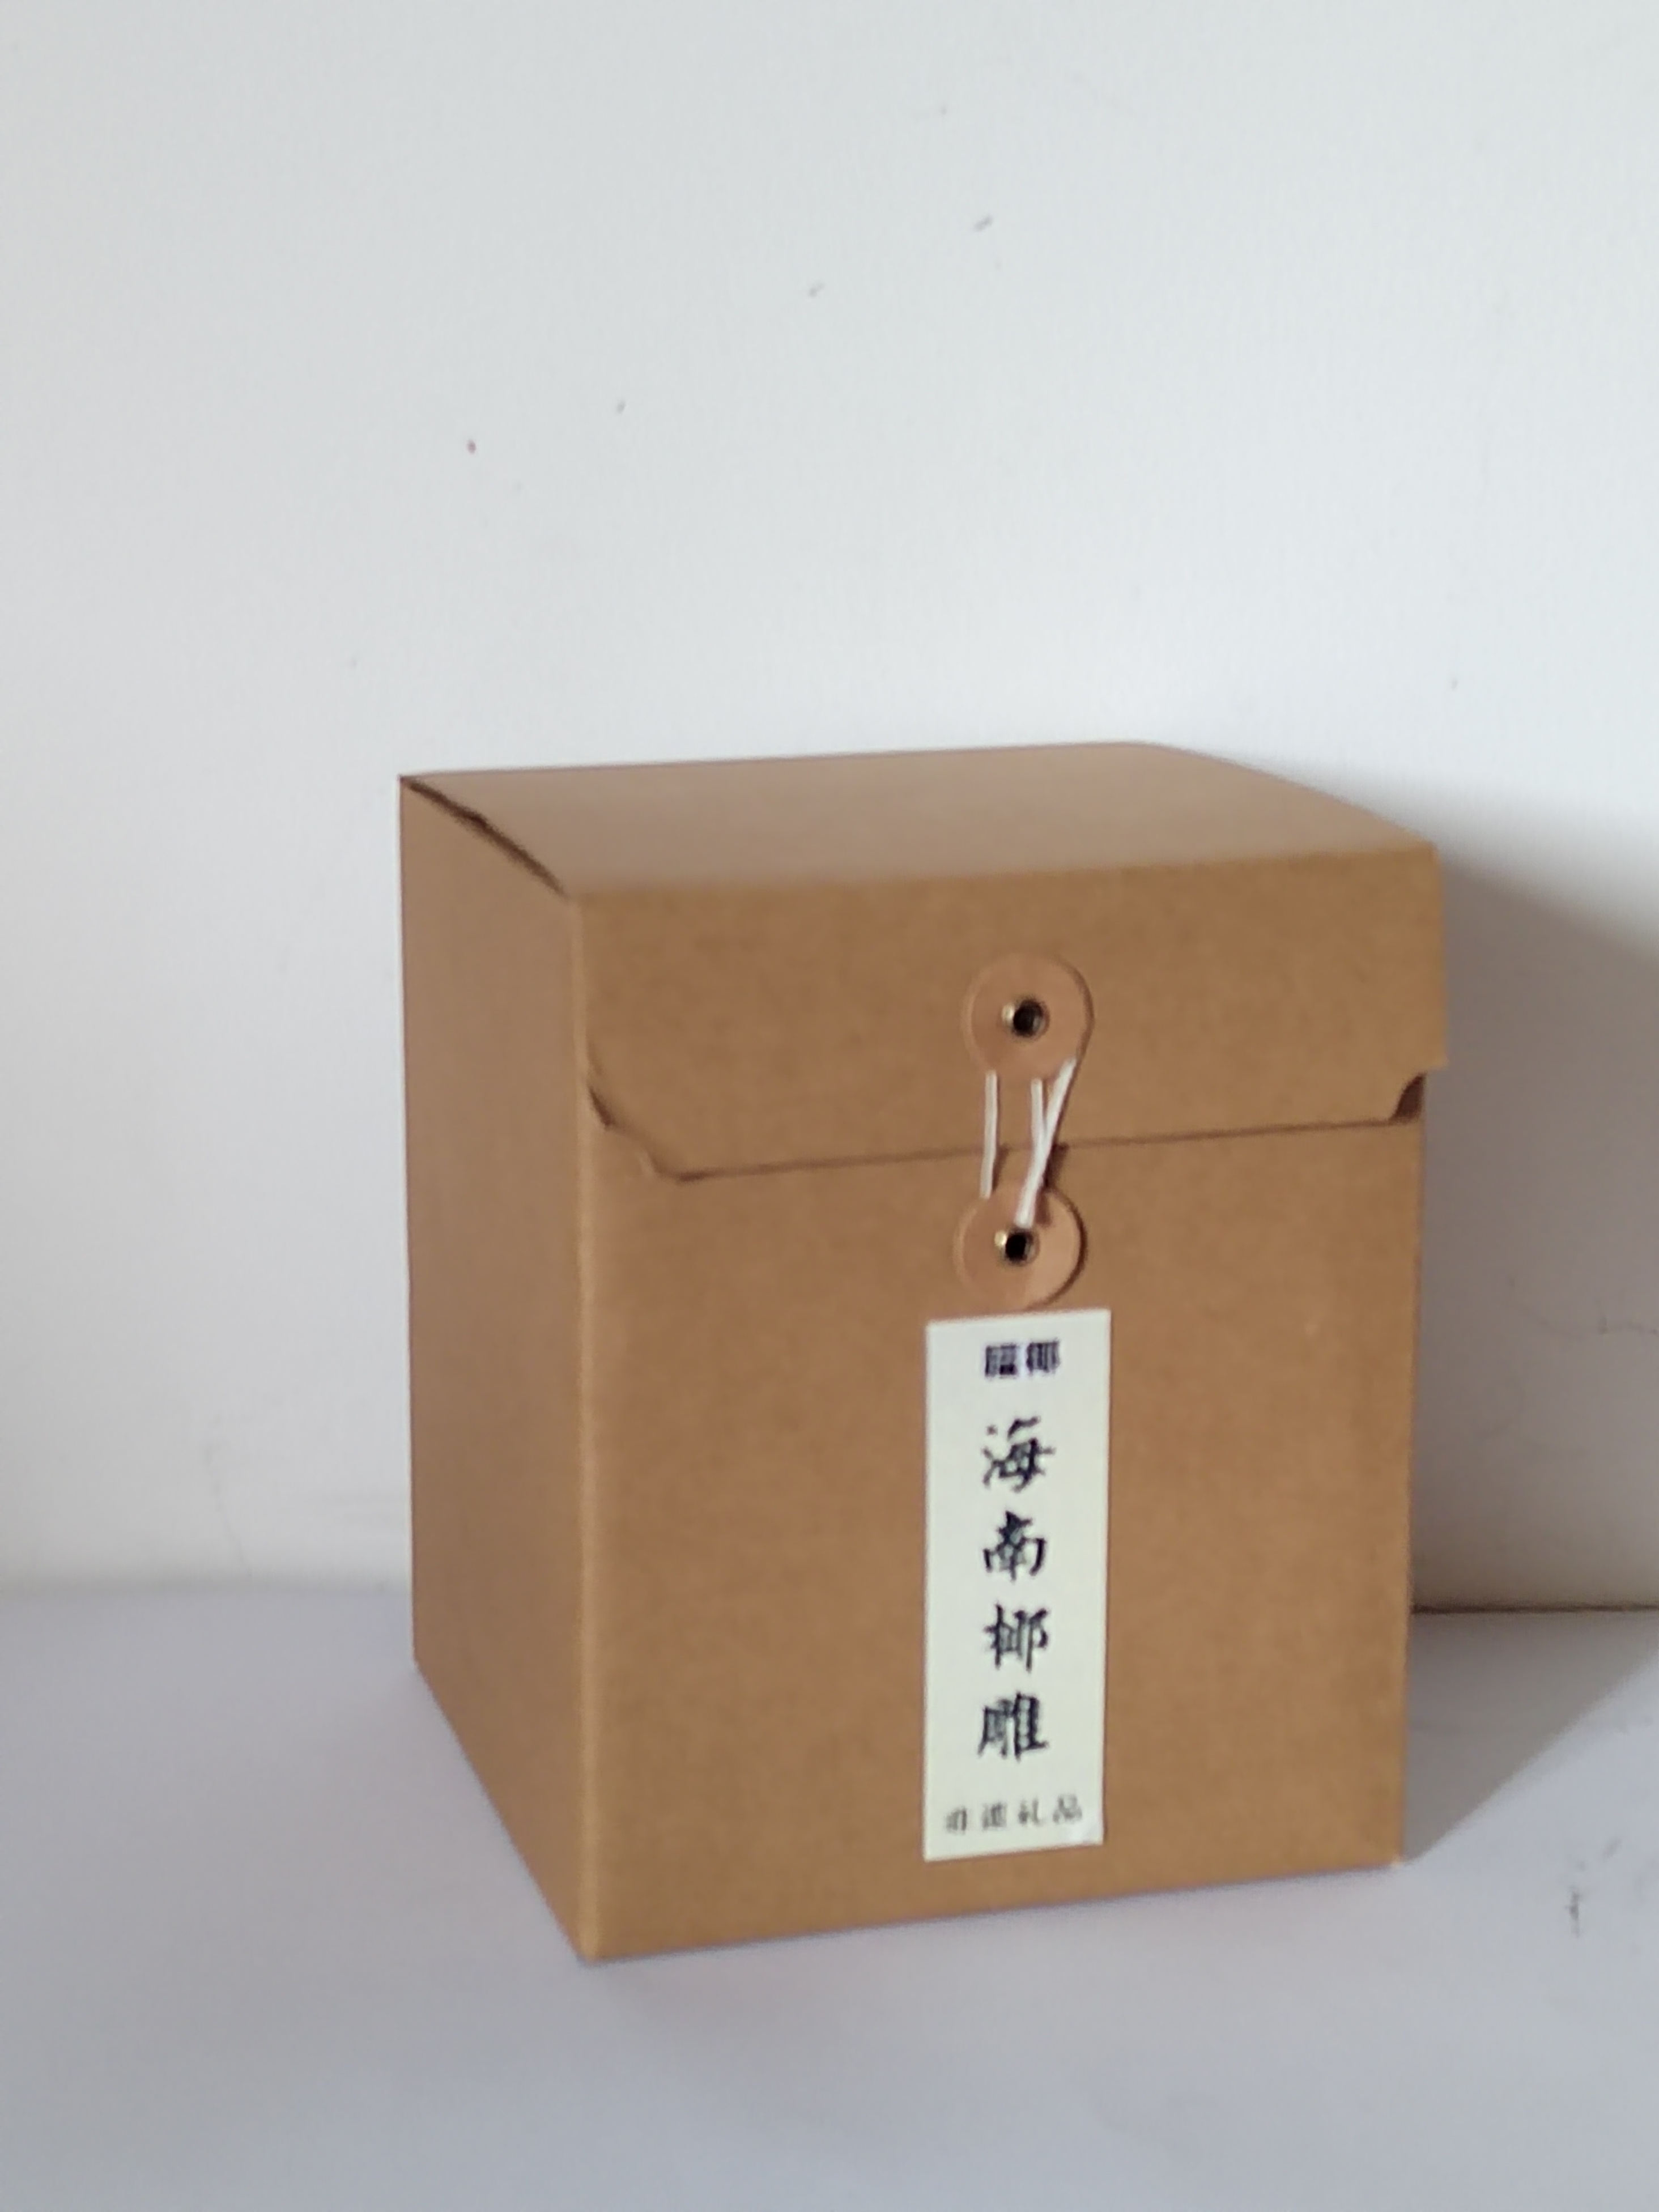 单礼盒包装 节日包装 椰雕精美礼品特卖热款 礼物集市活动 定制通用